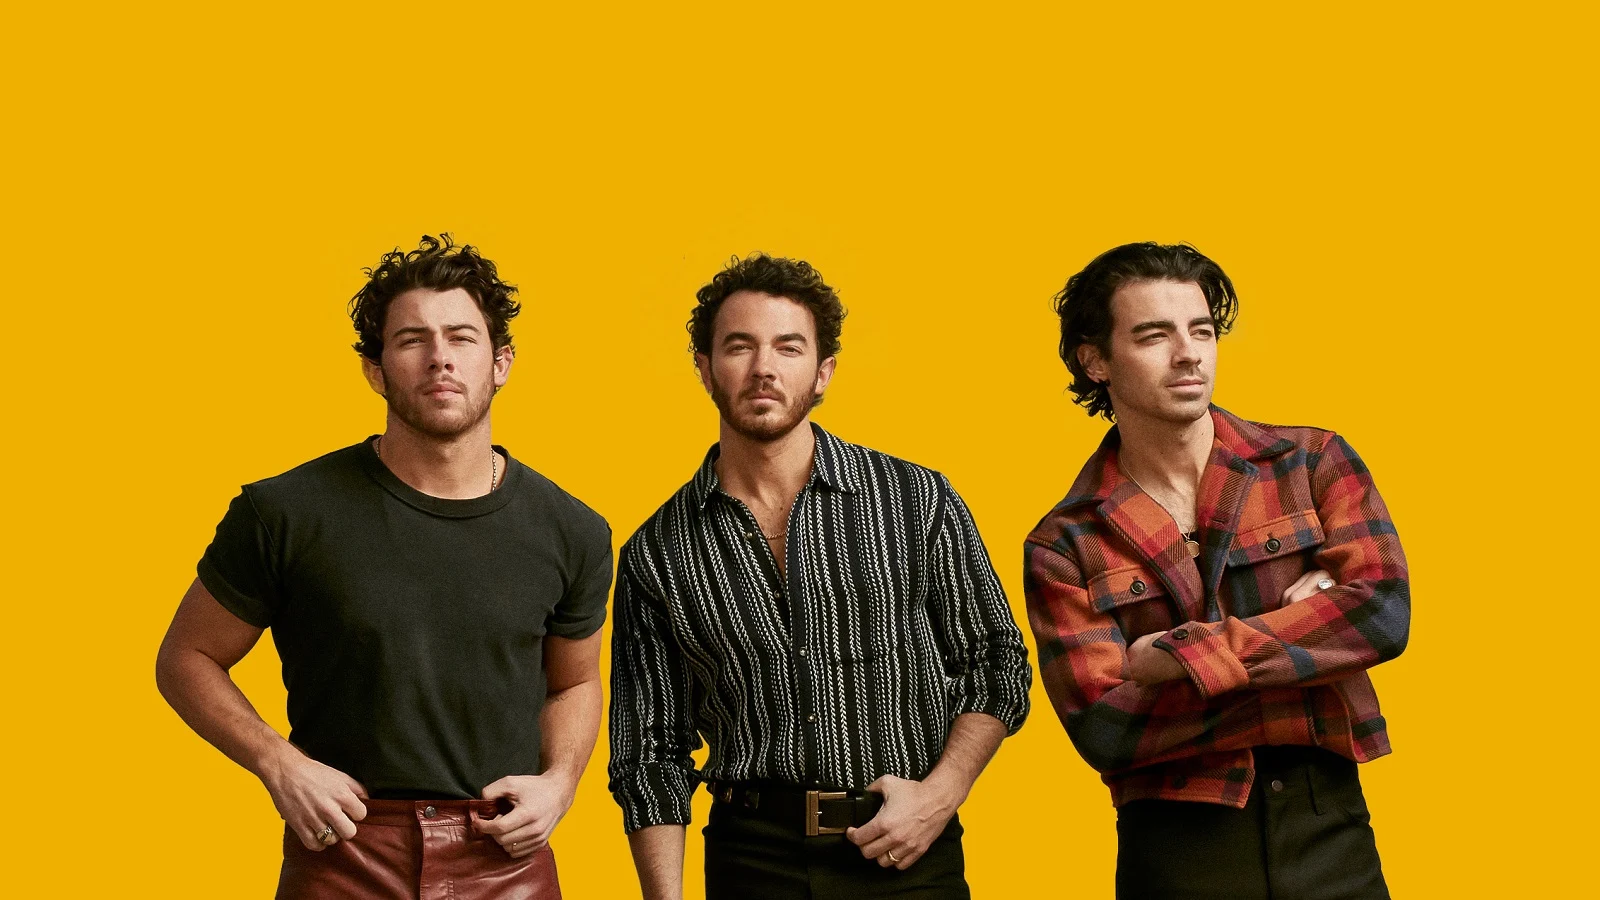 Konzert der Jonas Brothers auf Herbst verschoben!